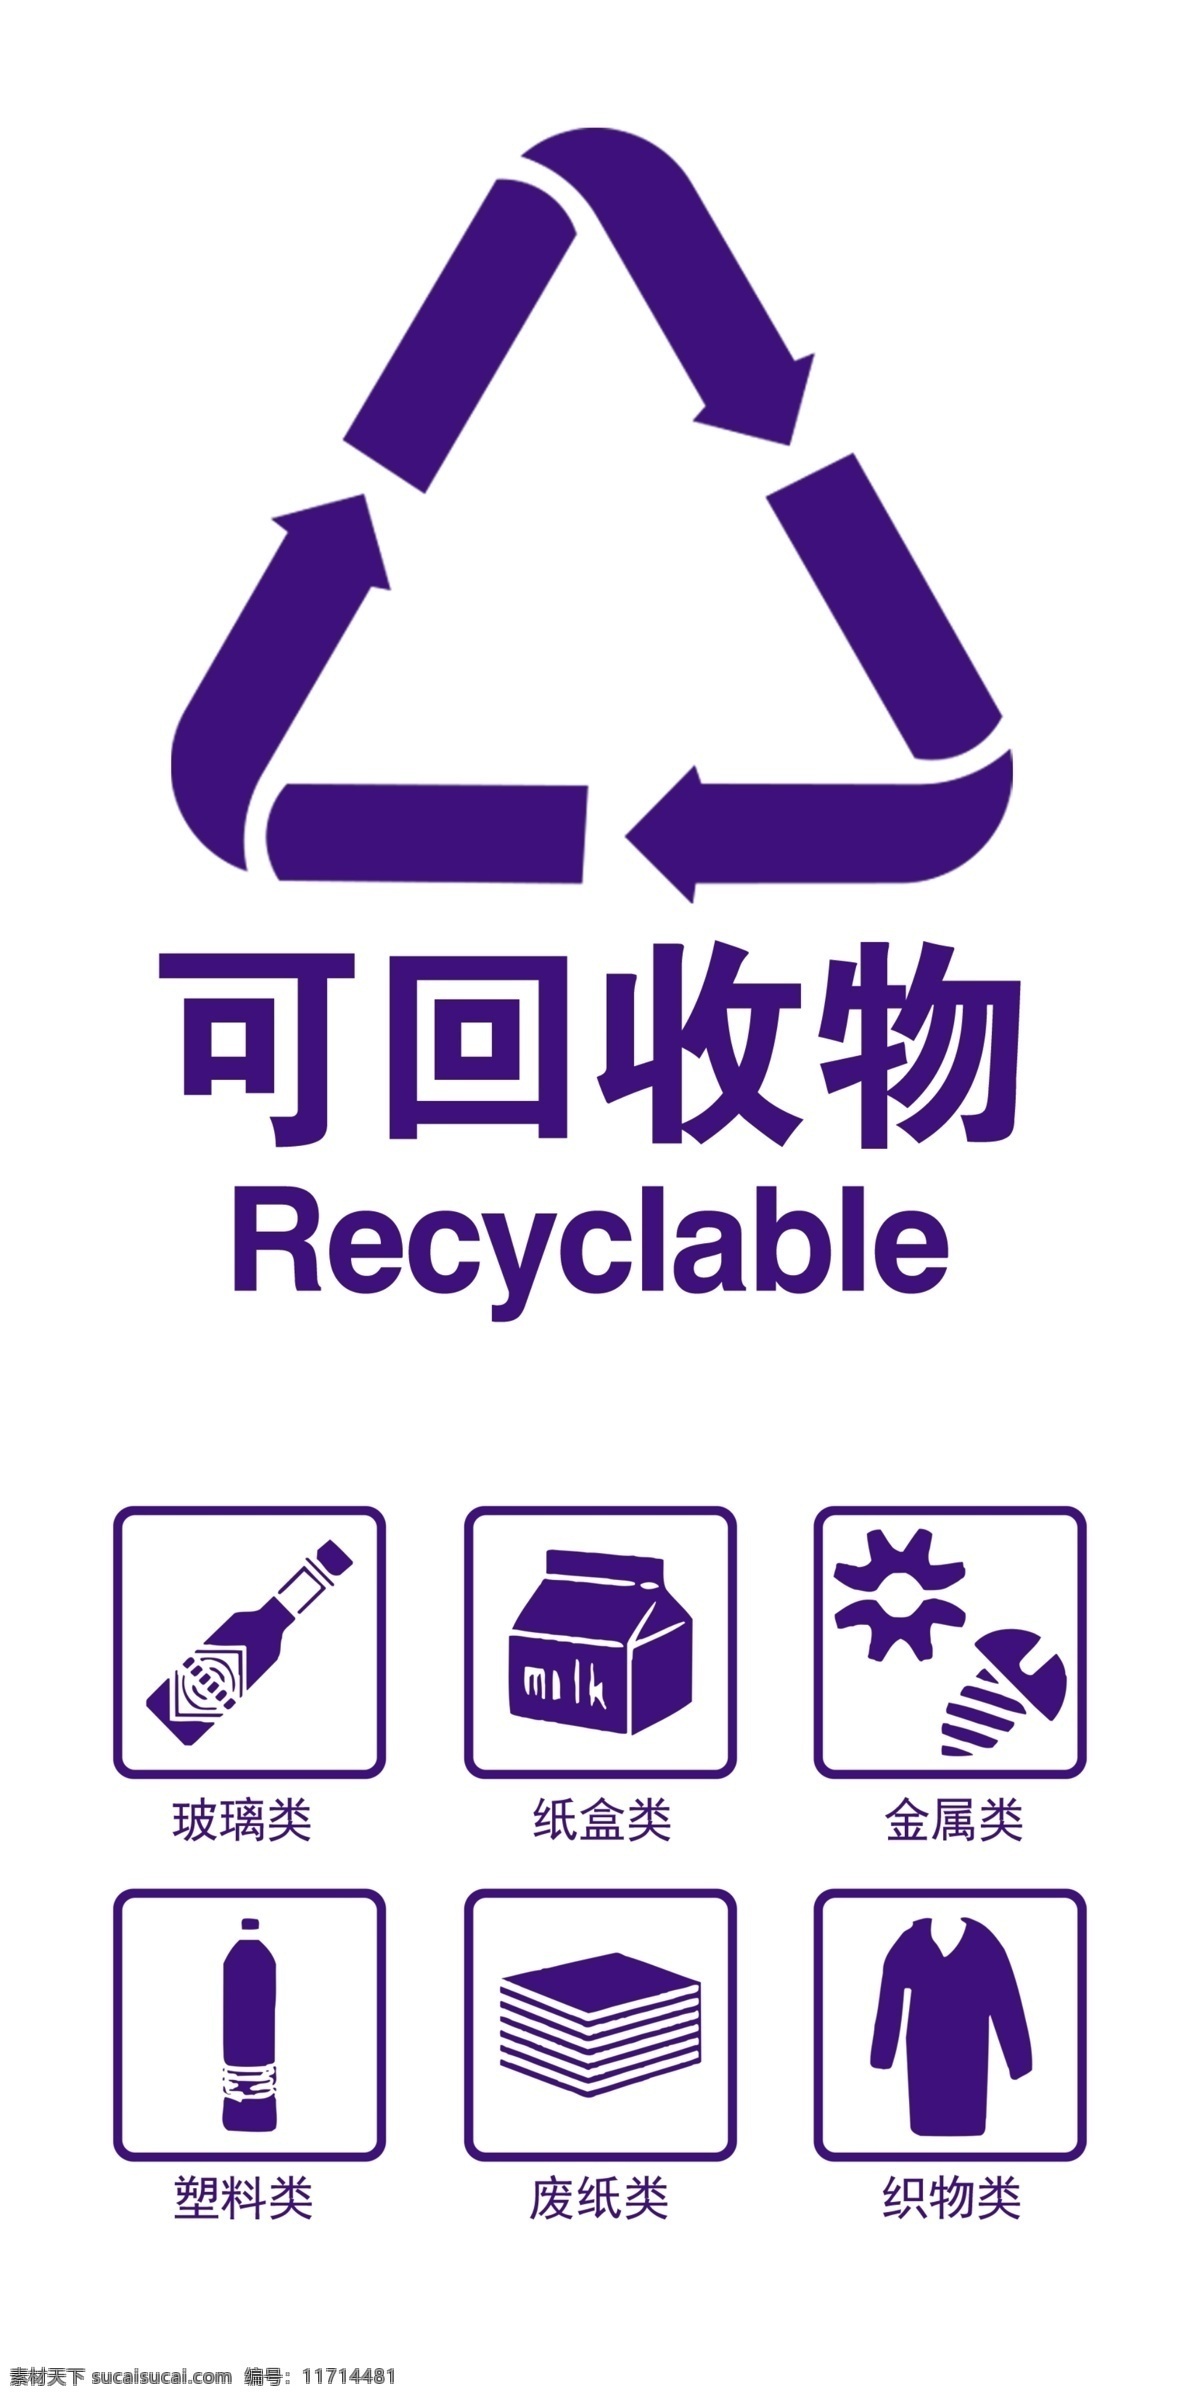 垃圾分类 可回收物图片 垃圾分类海报 垃圾分类图片 垃圾分类宣传 生活垃圾分类 垃圾分类知识 垃圾分类标准